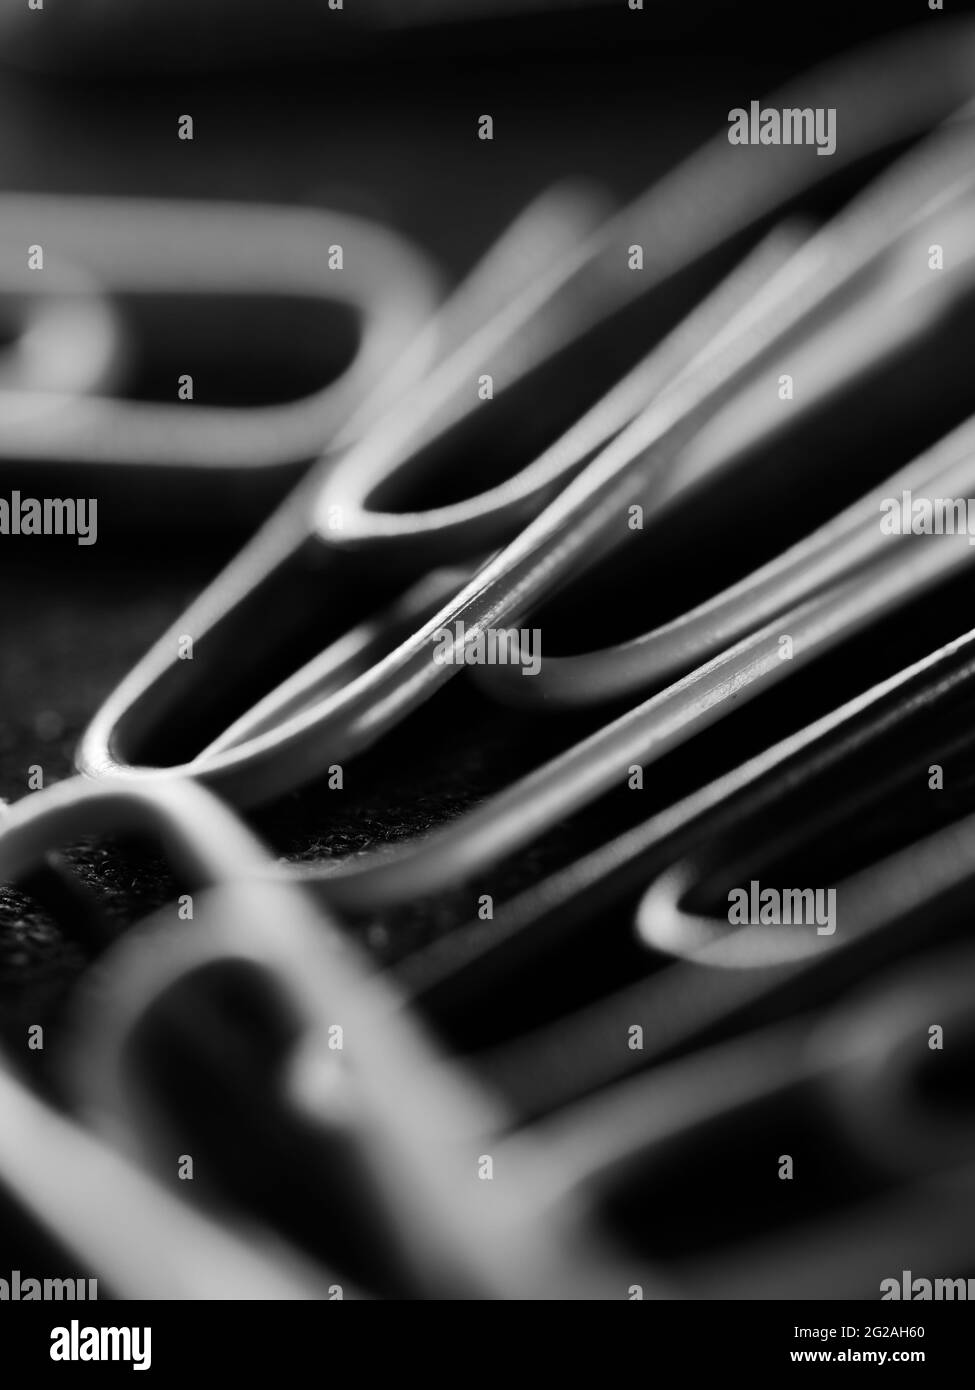 Vertikale Graustufenaufnahme von verstreuten Büroklammern auf einer schwarzen Oberfläche Stockfoto